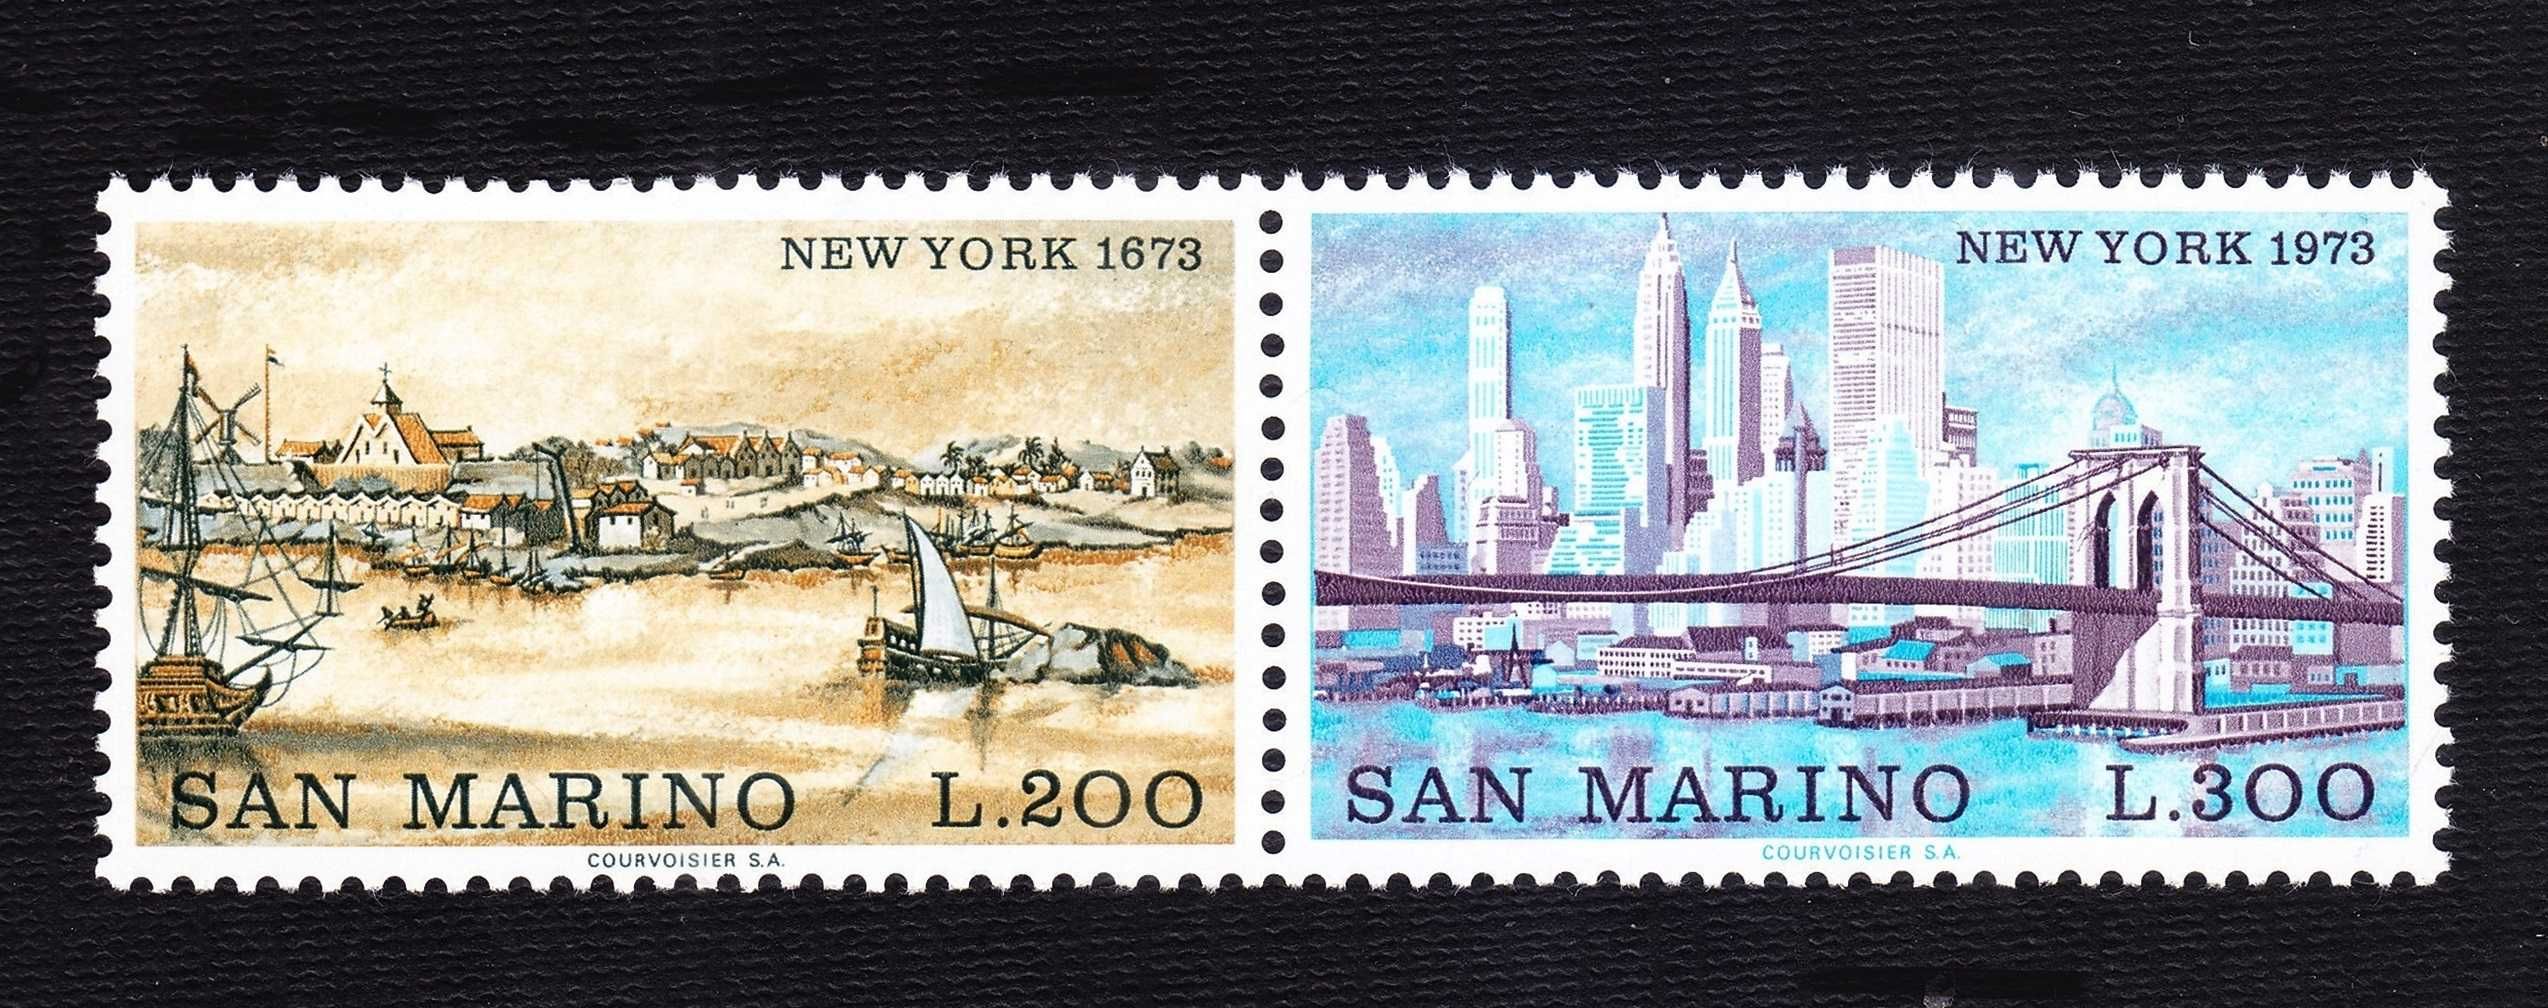 1973 - São Marino - Ano completo - Selos novos (MNH)